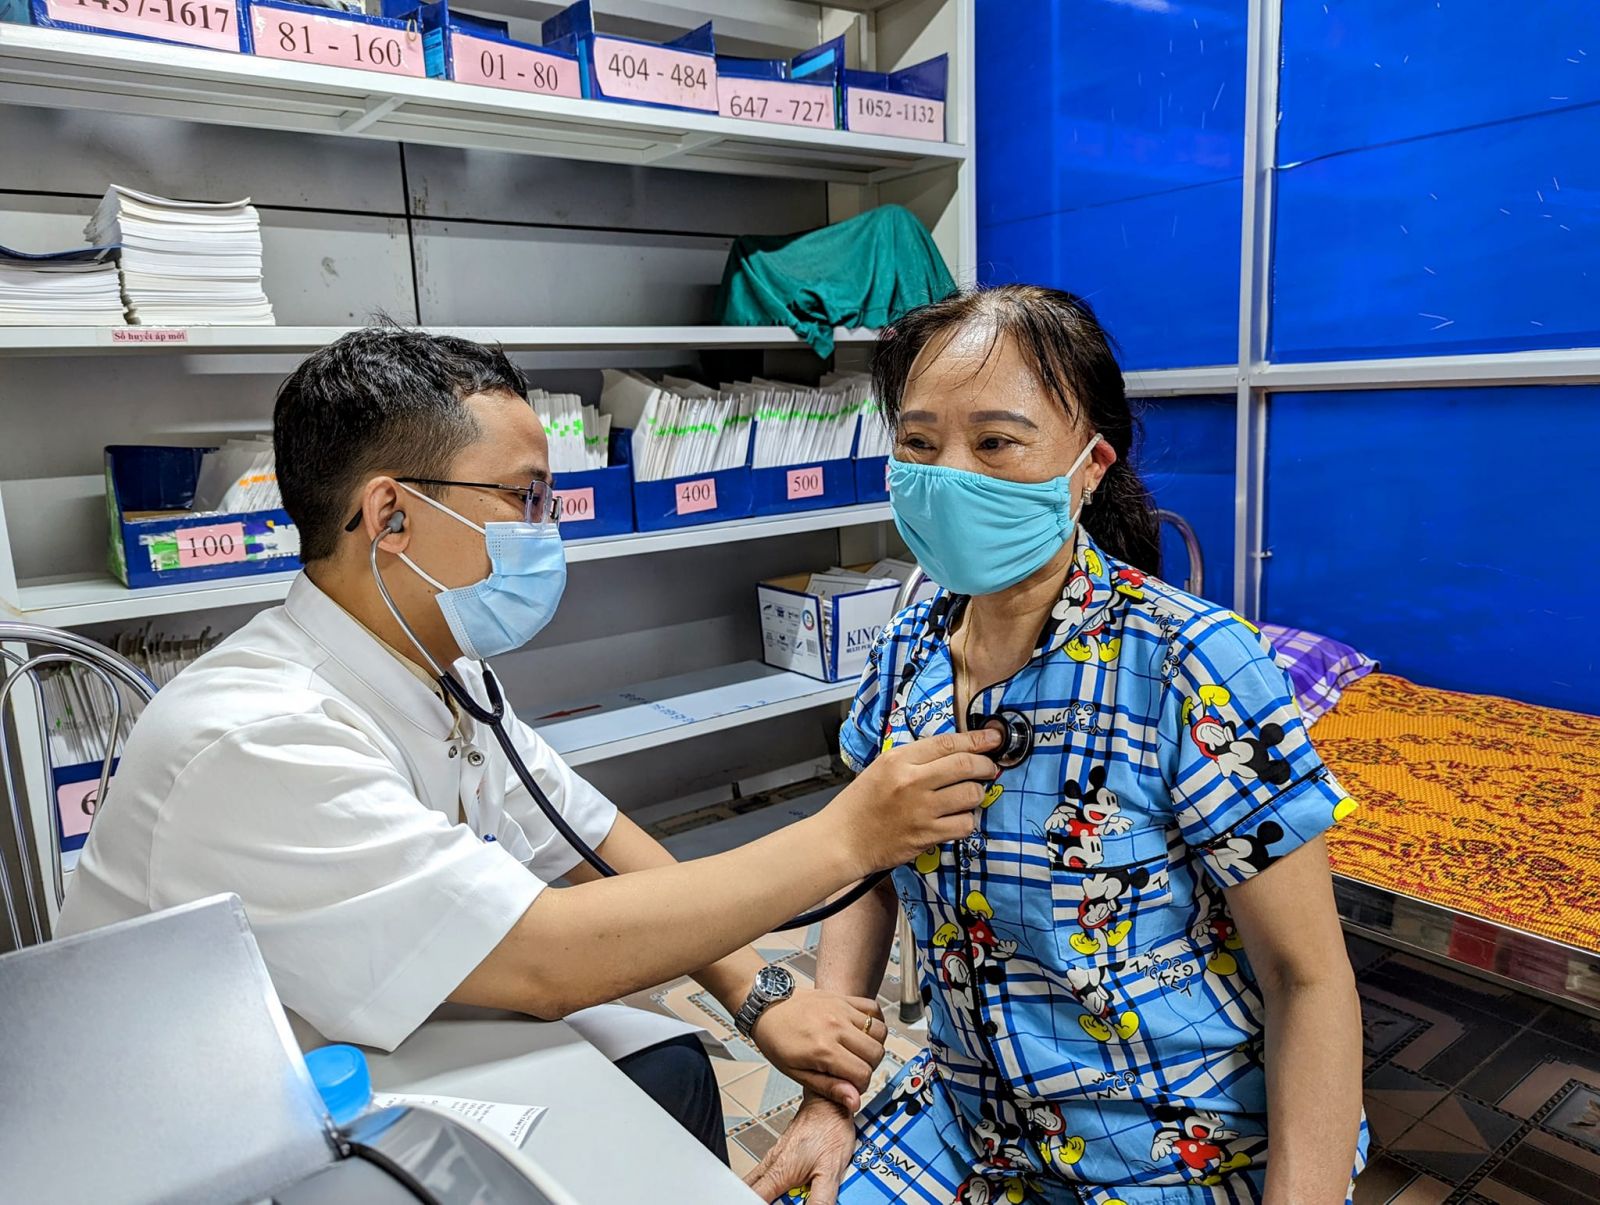 Bệnh viện Trung ương Huế khám, tư vấn bệnh tim mạch cho người dân Hà Tĩnh